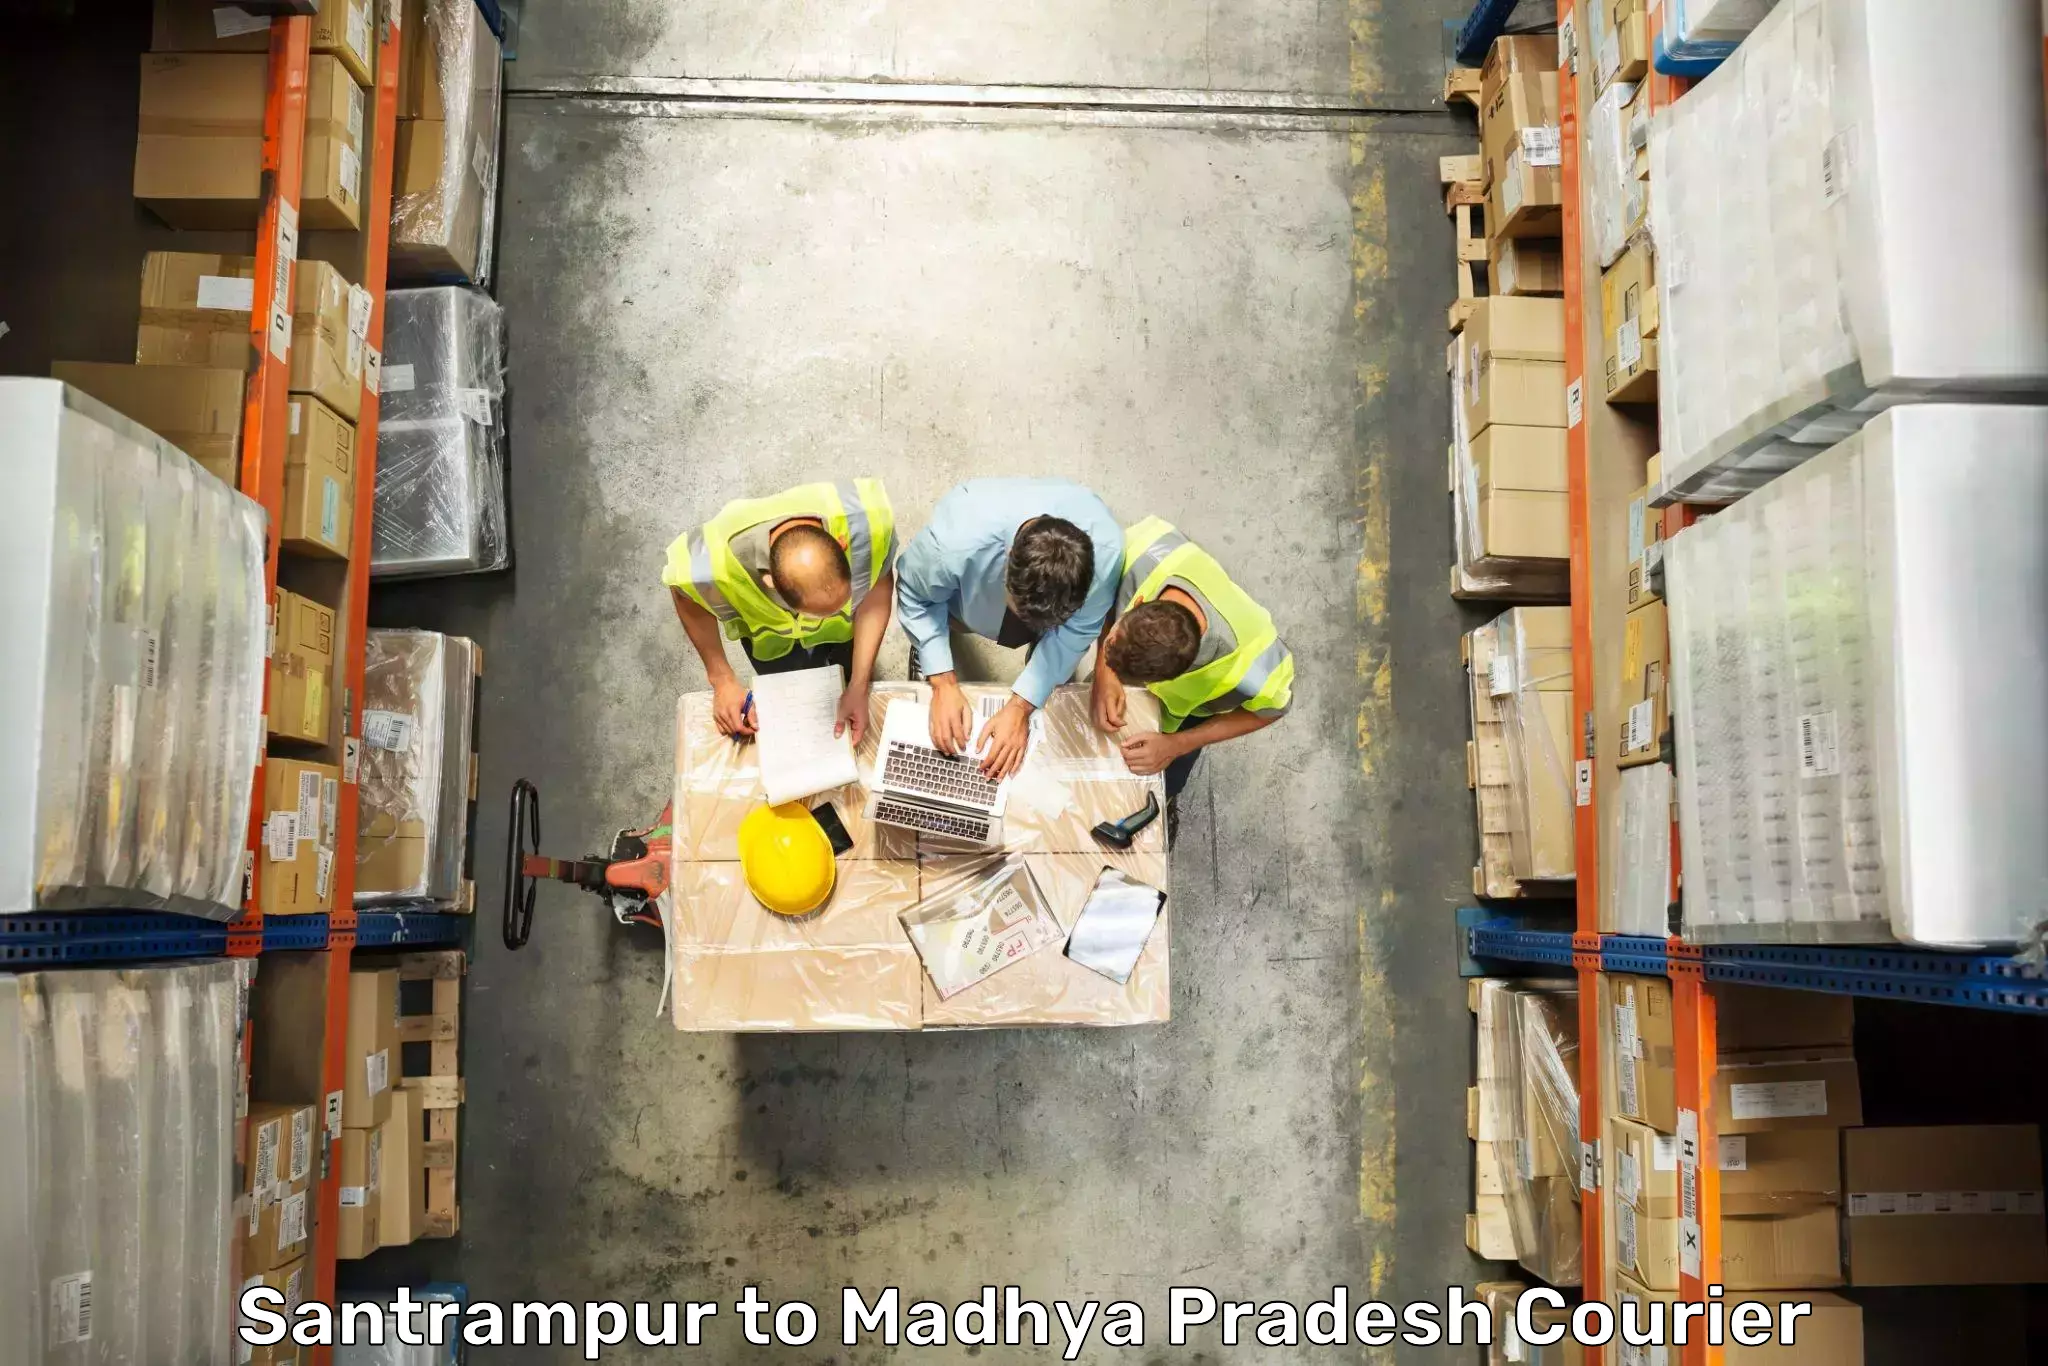 Baggage shipping experts Santrampur to Mundi